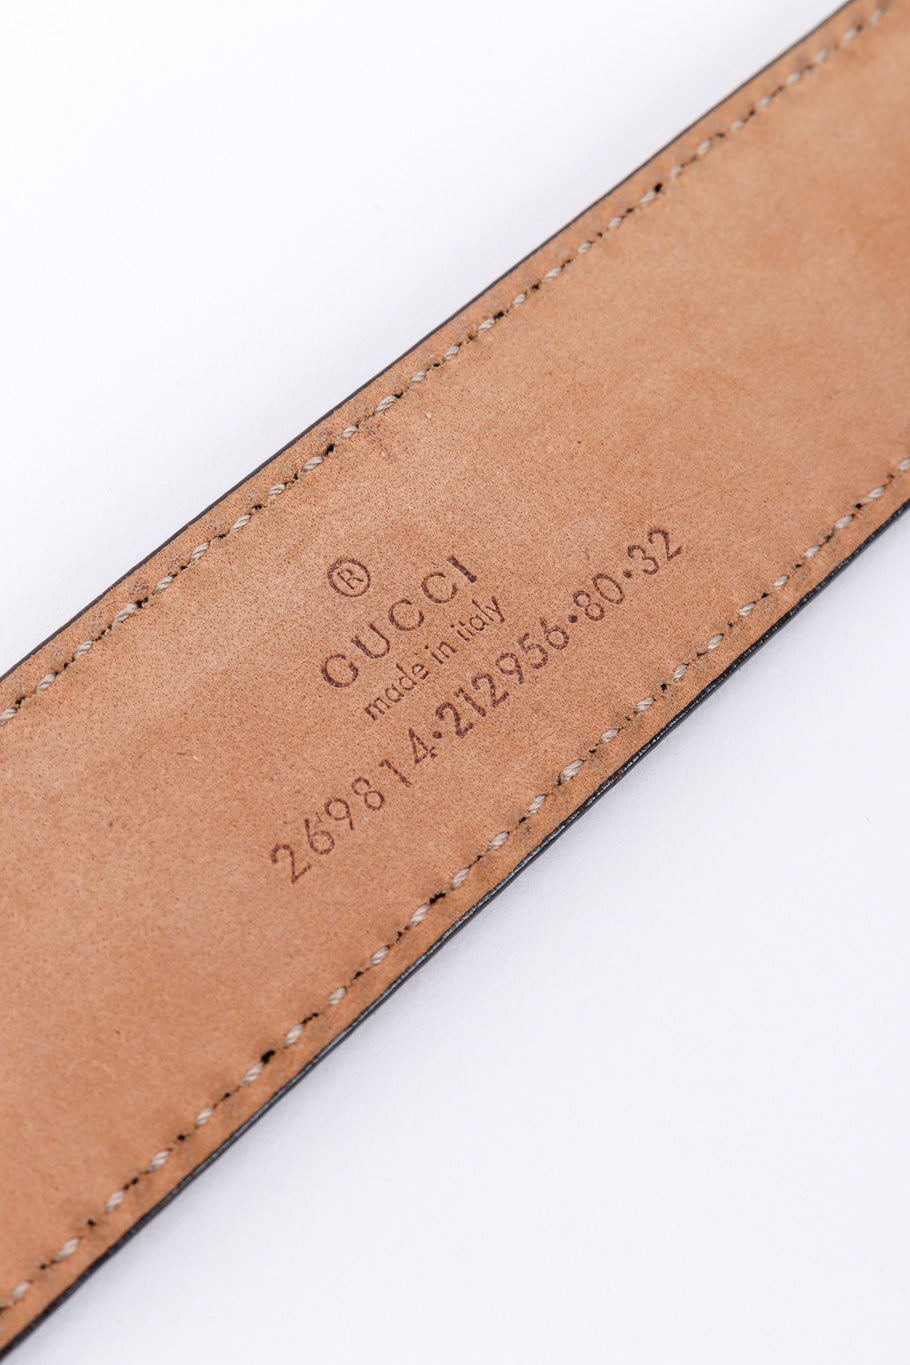 Gucci Horsebit Tassel Belt signature closeup @recessla